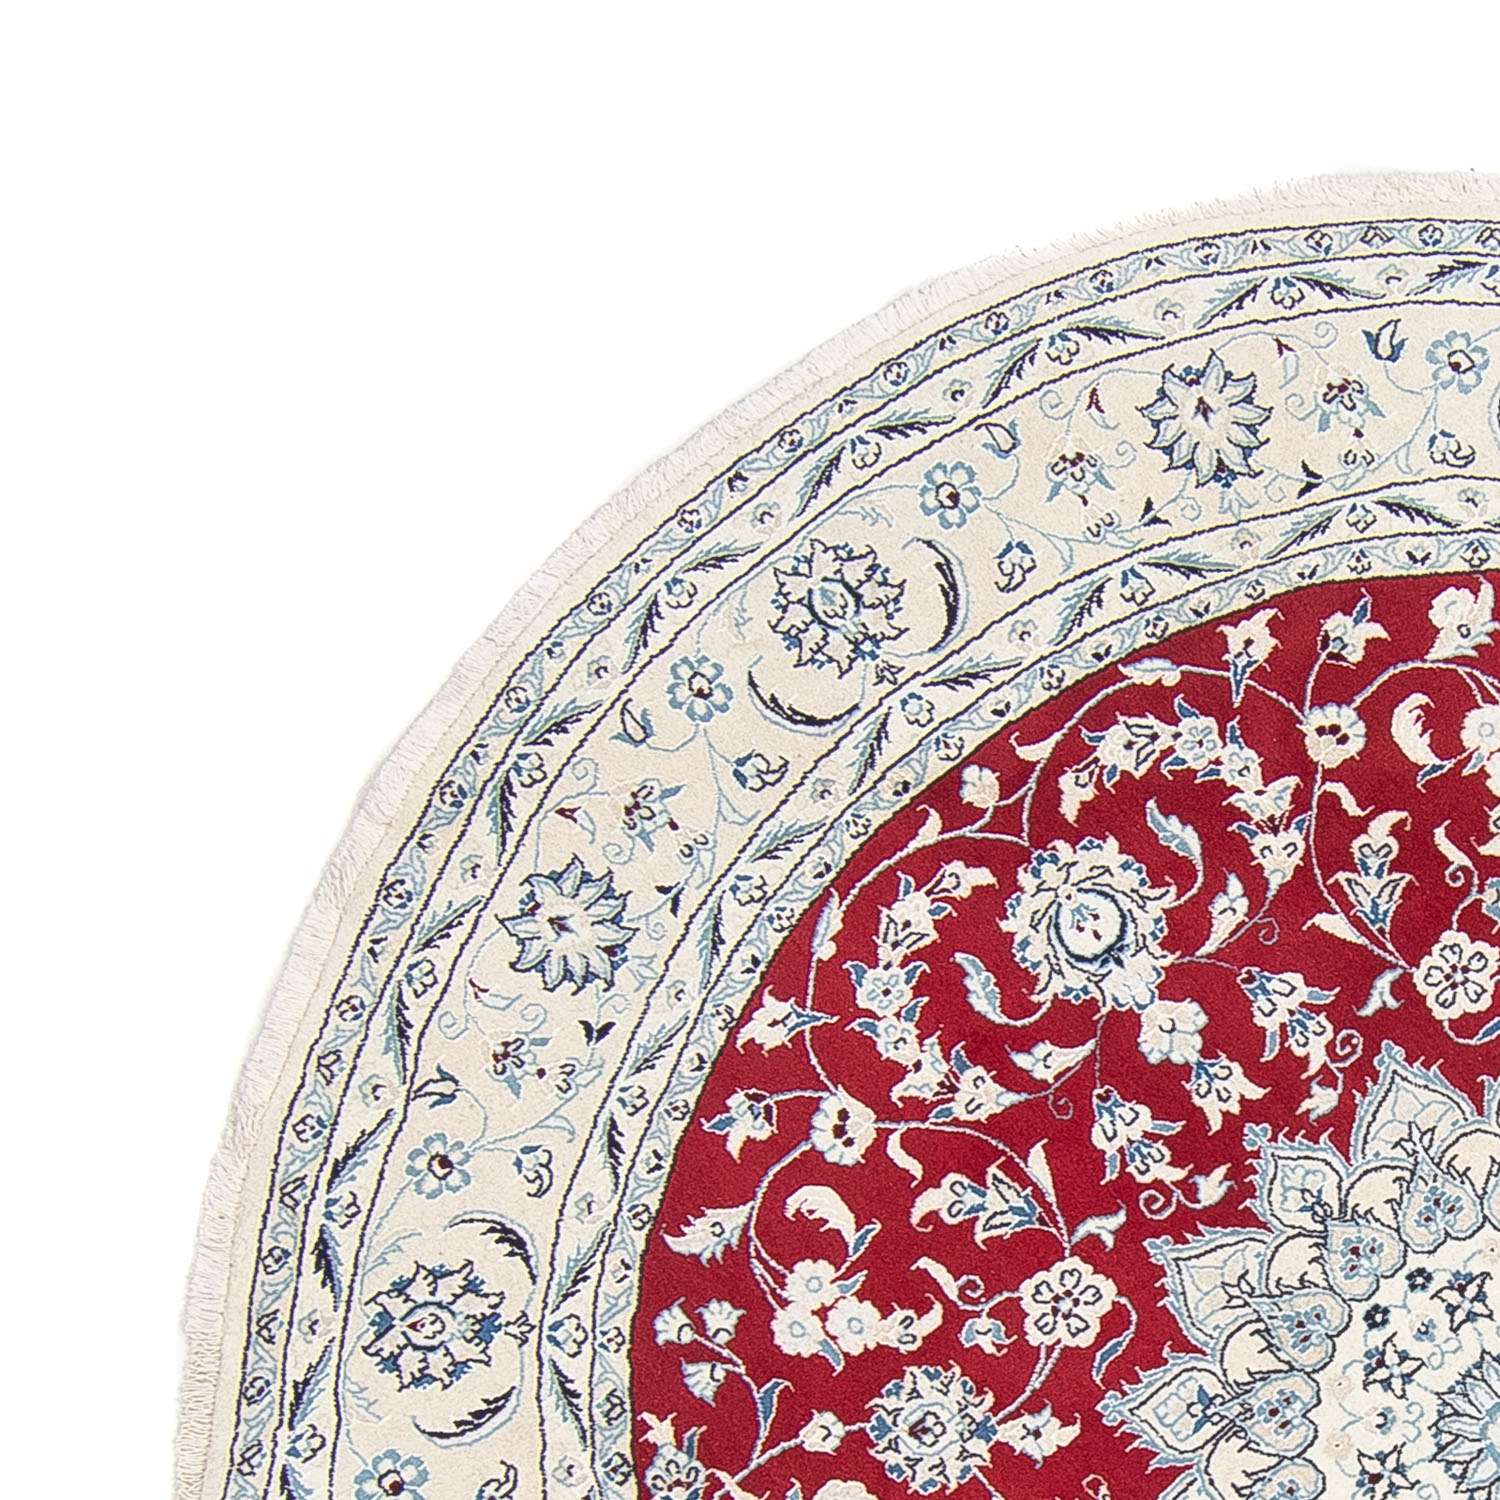 Perzisch tapijt - Nain rond  - 250 x 250 cm - donkerrood